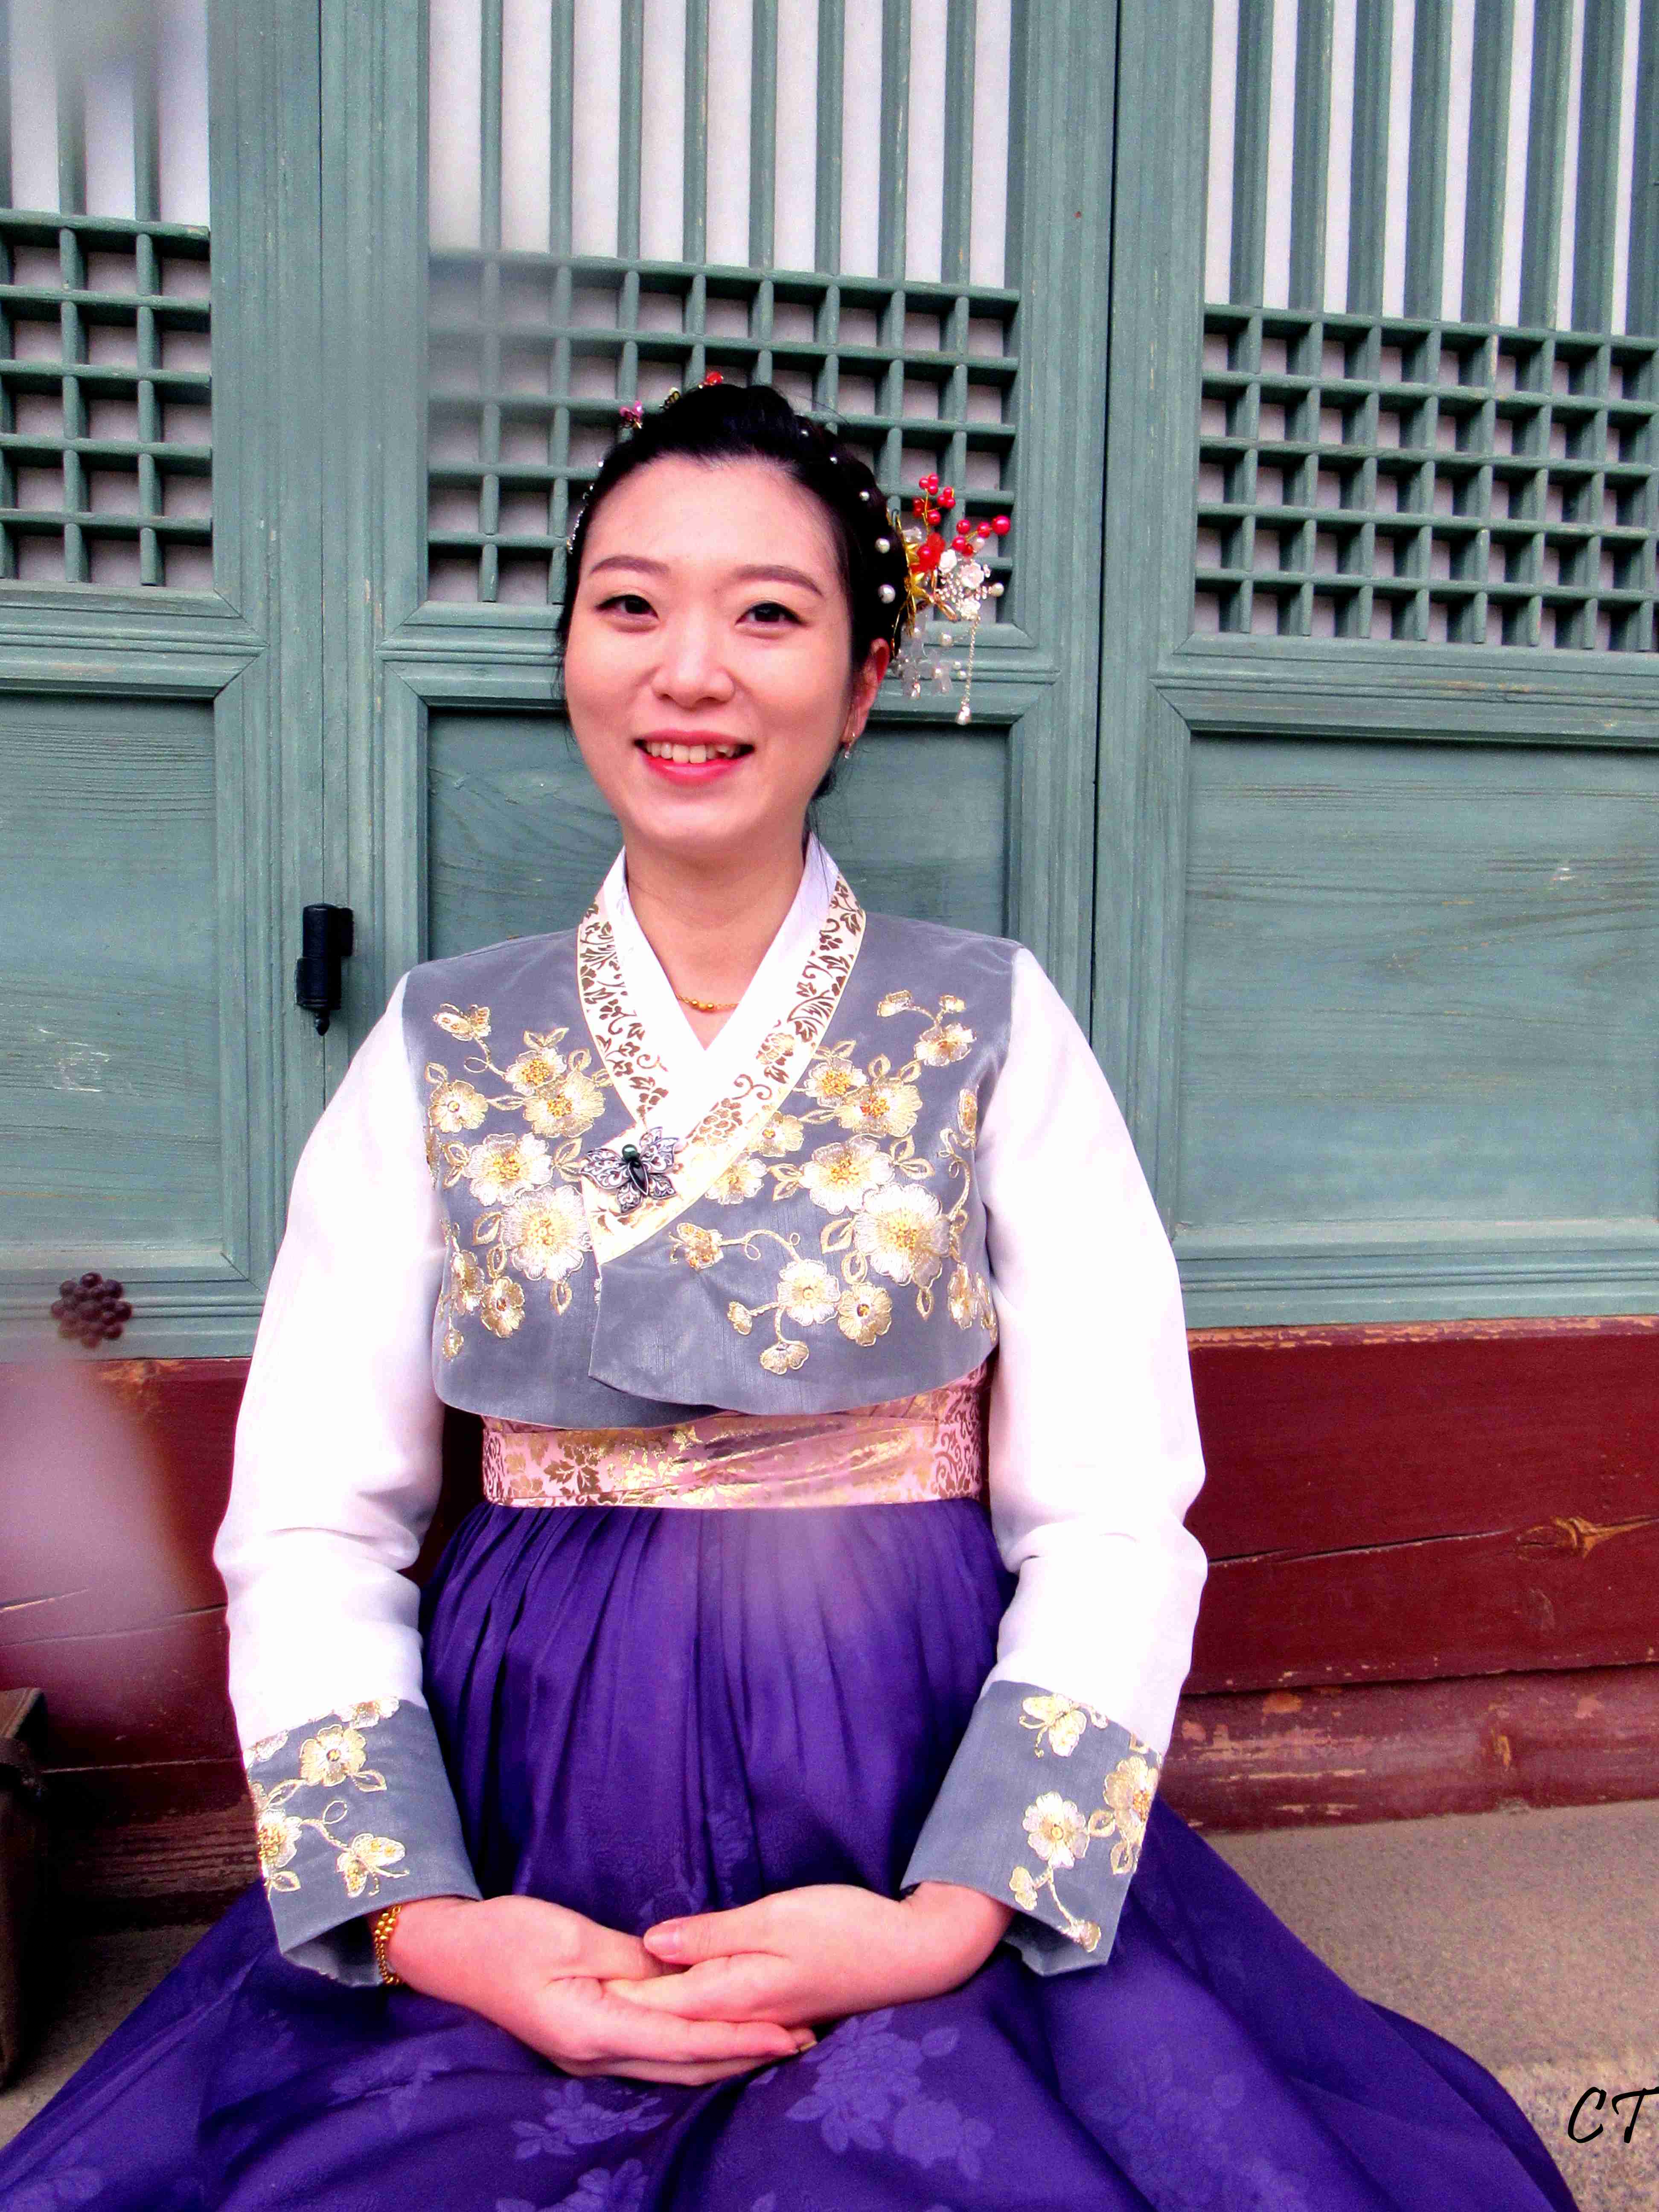 Fille Coréenne Avec Coiffe Et Costume Traditionnel